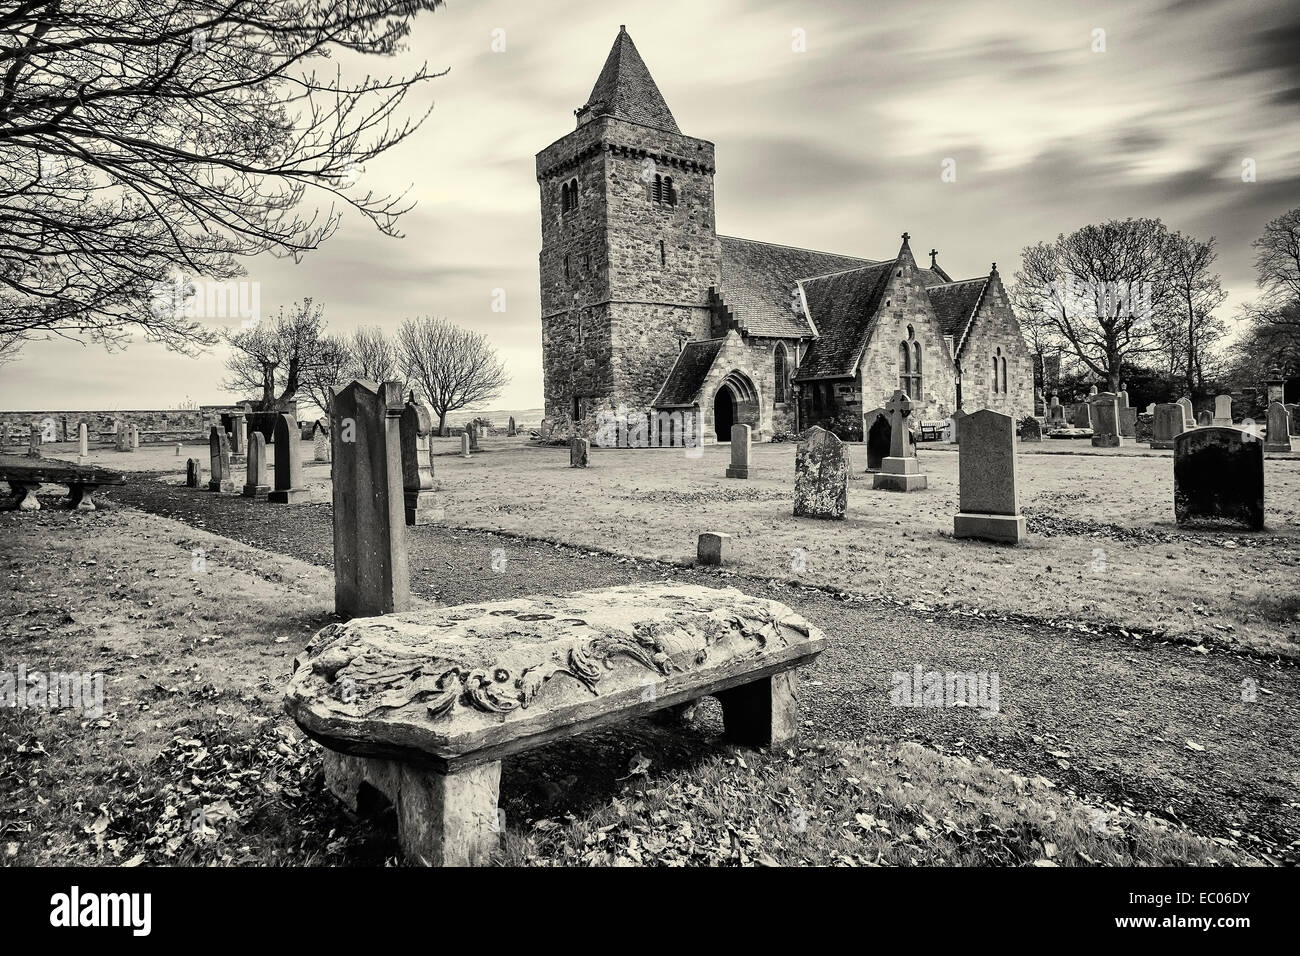 Aberlady église paroissiale et le cimetière (kirkyard) dans la région de East Lothian, Ecosse. Banque D'Images